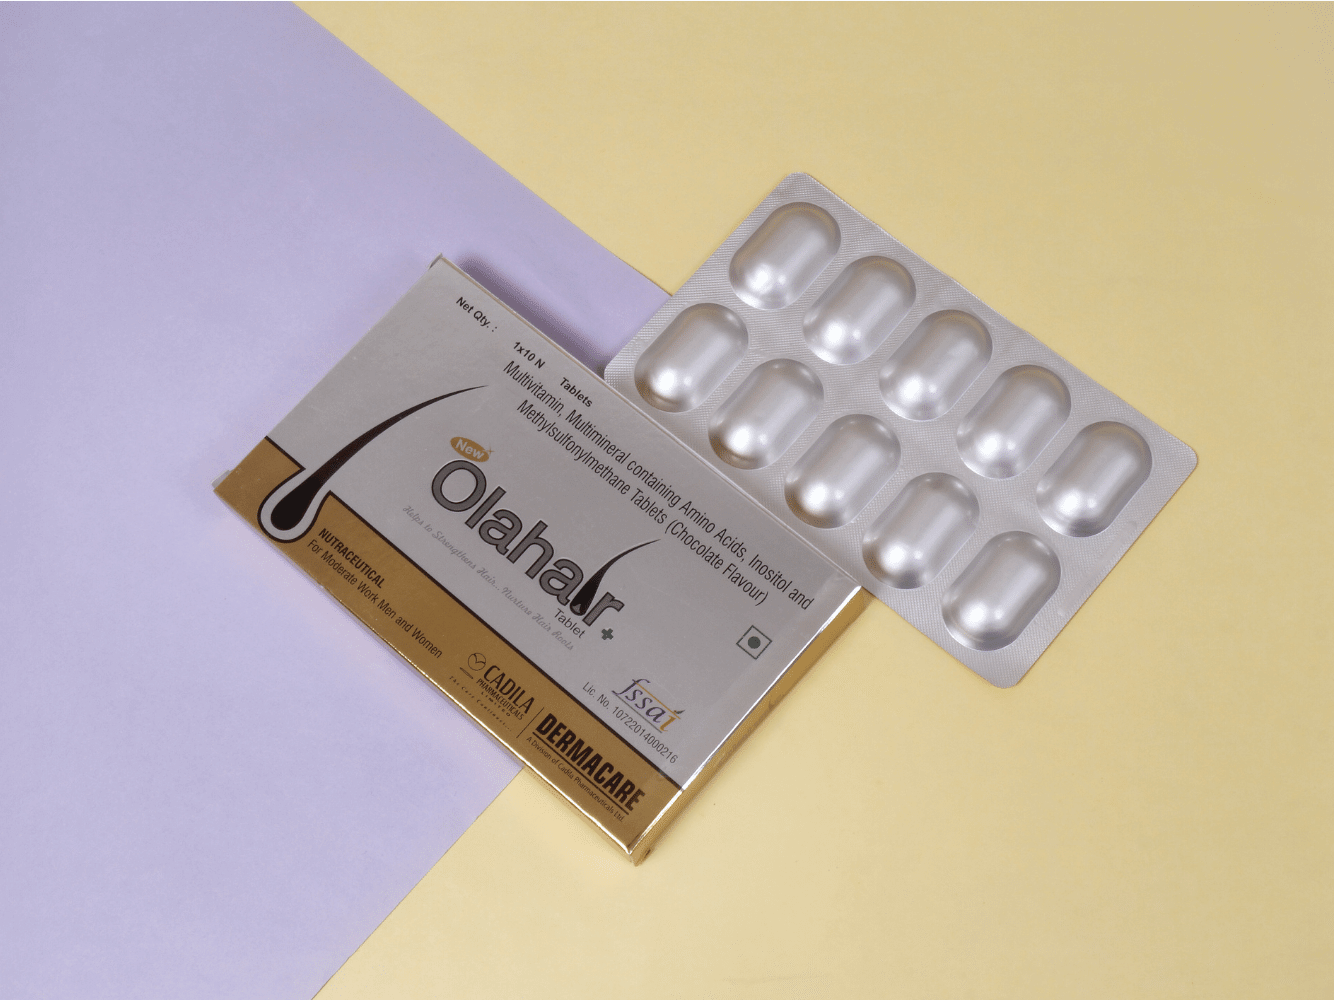 New Olahair + Tablets - Clinikally